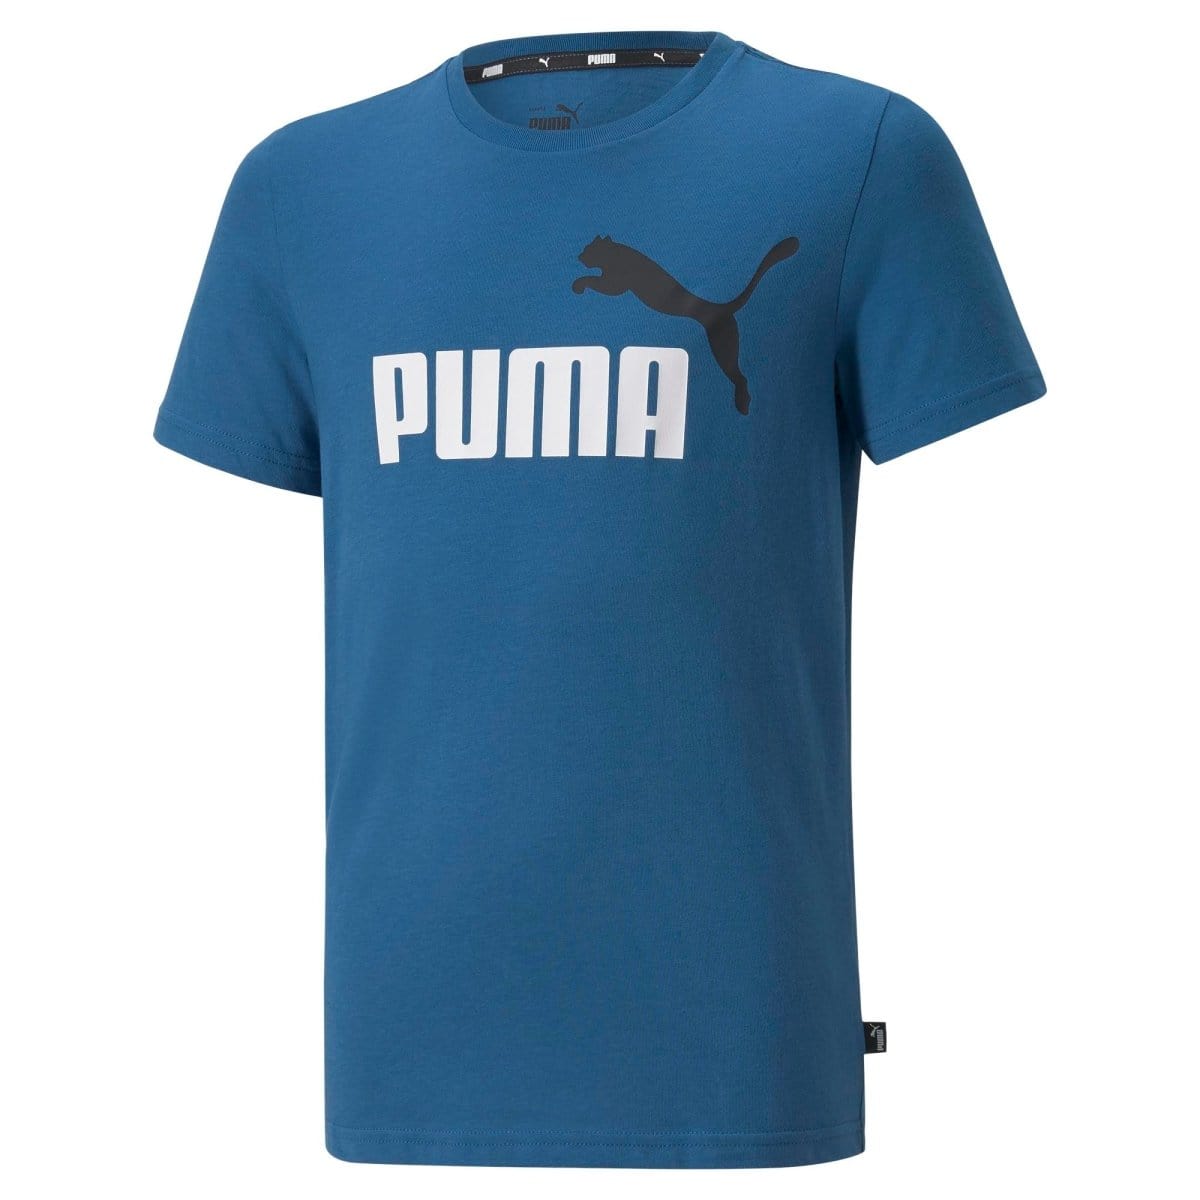 Puma PUMA JUNIOR ESSENTIAL 2 COLOUR BLUE TEE - INSPORT